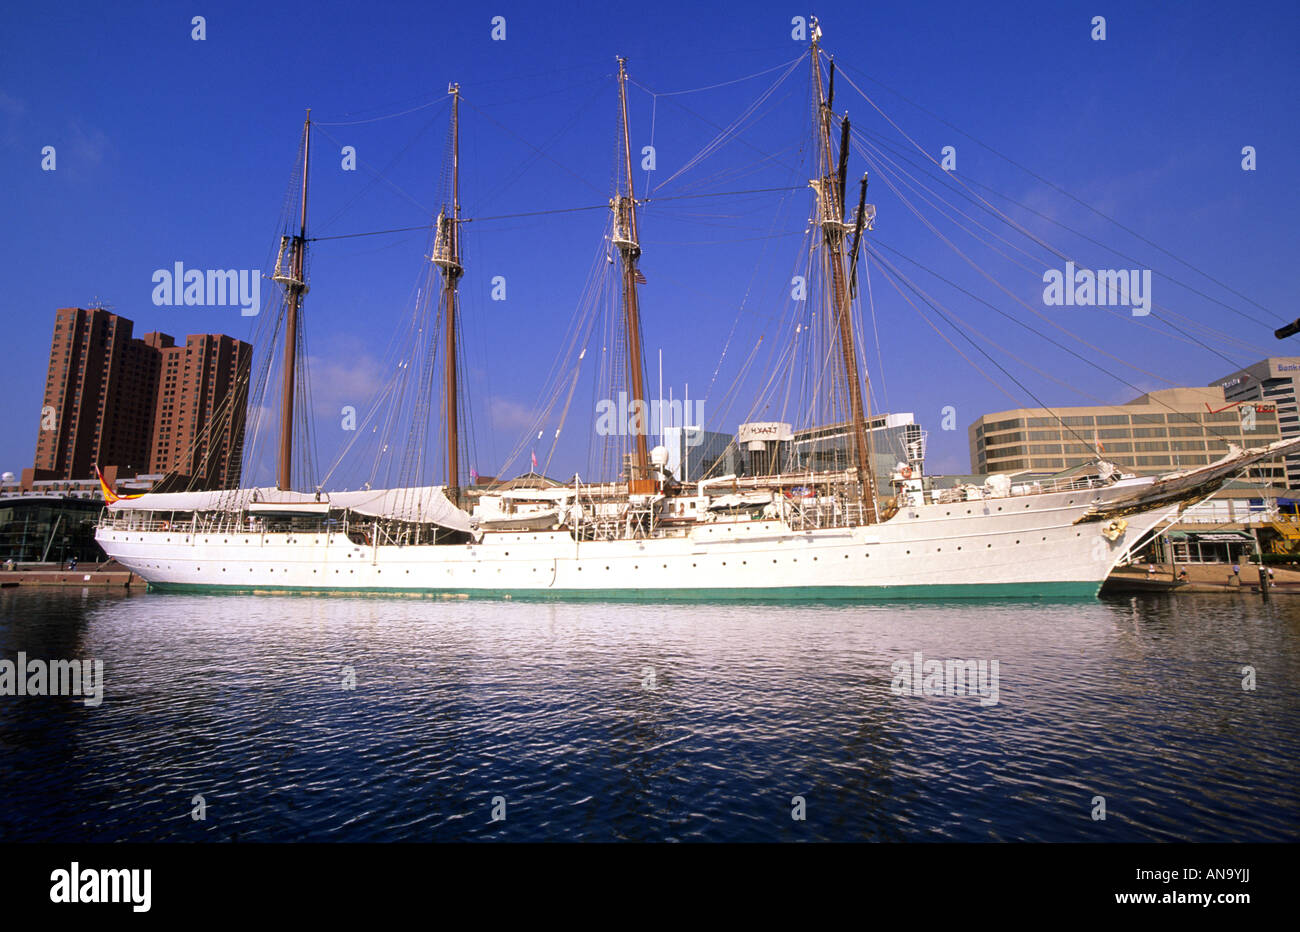 Grand bateau de croisière à la tondeuse Baltimore Harbour Maryland États-Unis Banque D'Images